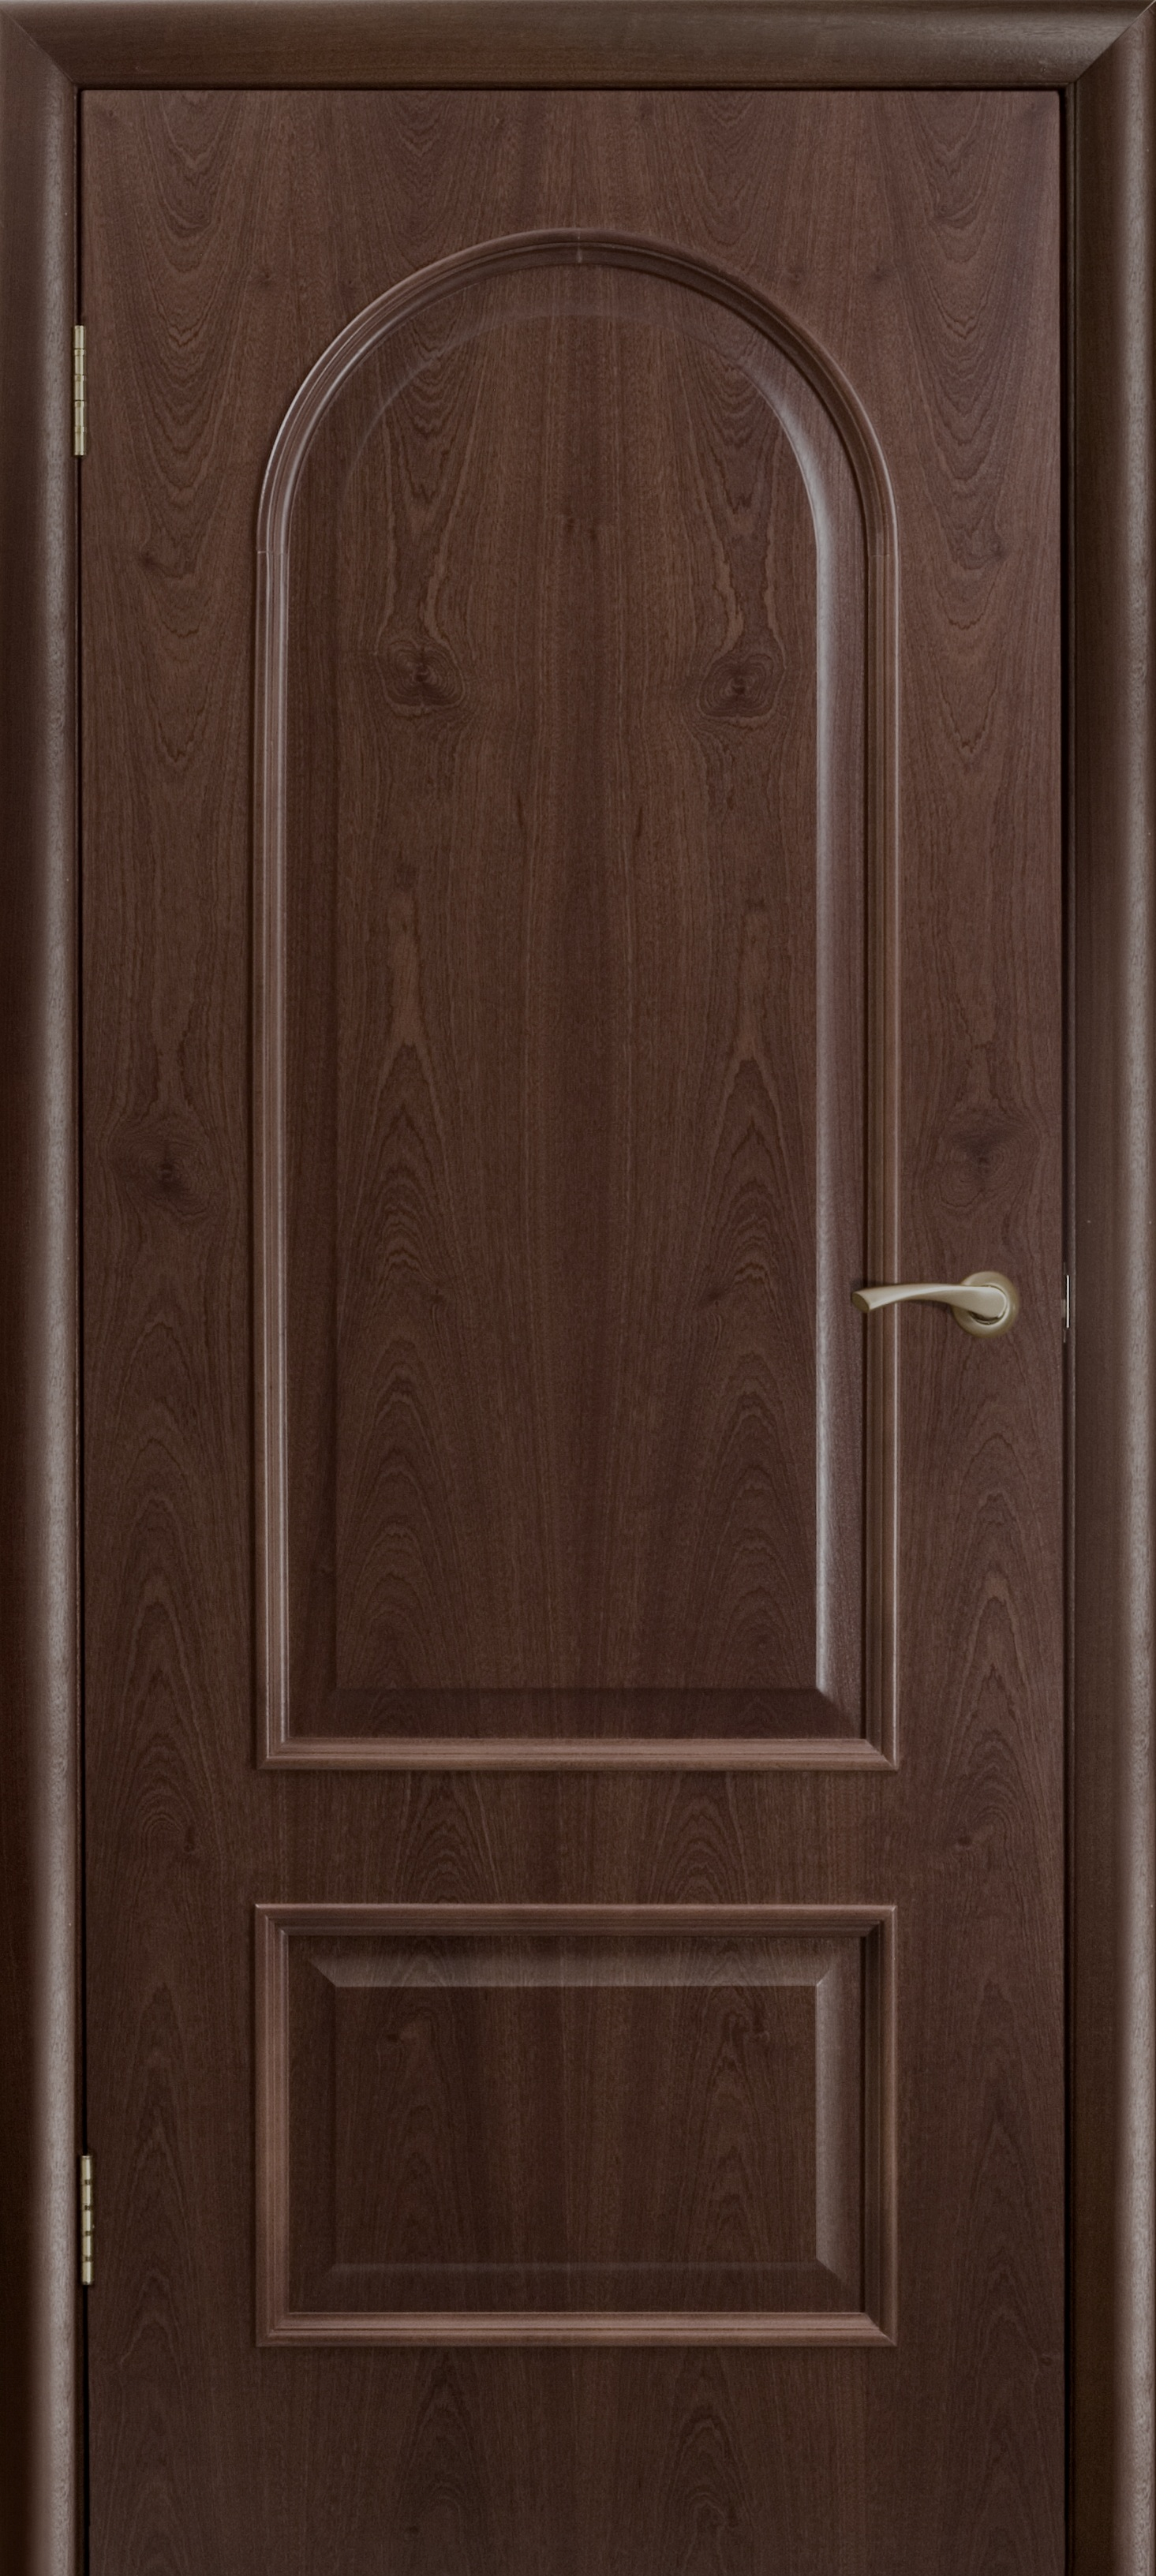 Современная деревянная дверь PNG фото